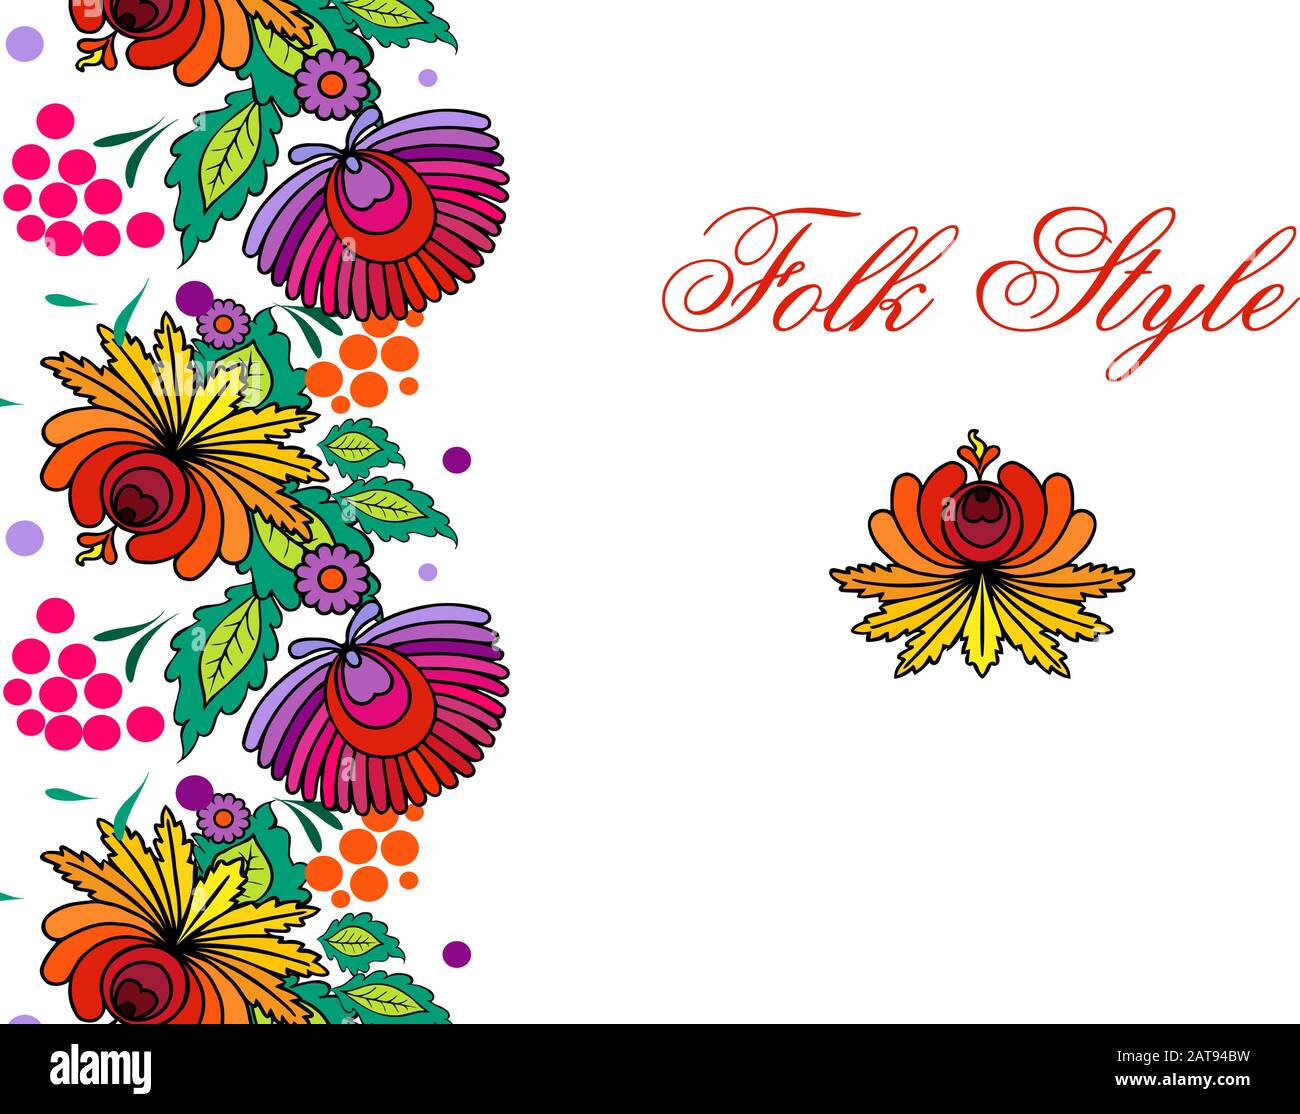 Bordure fleurie folklorique - modèle de fleur de style folklorique polonais - vignette ornementale vectorielle Illustration de Vecteur